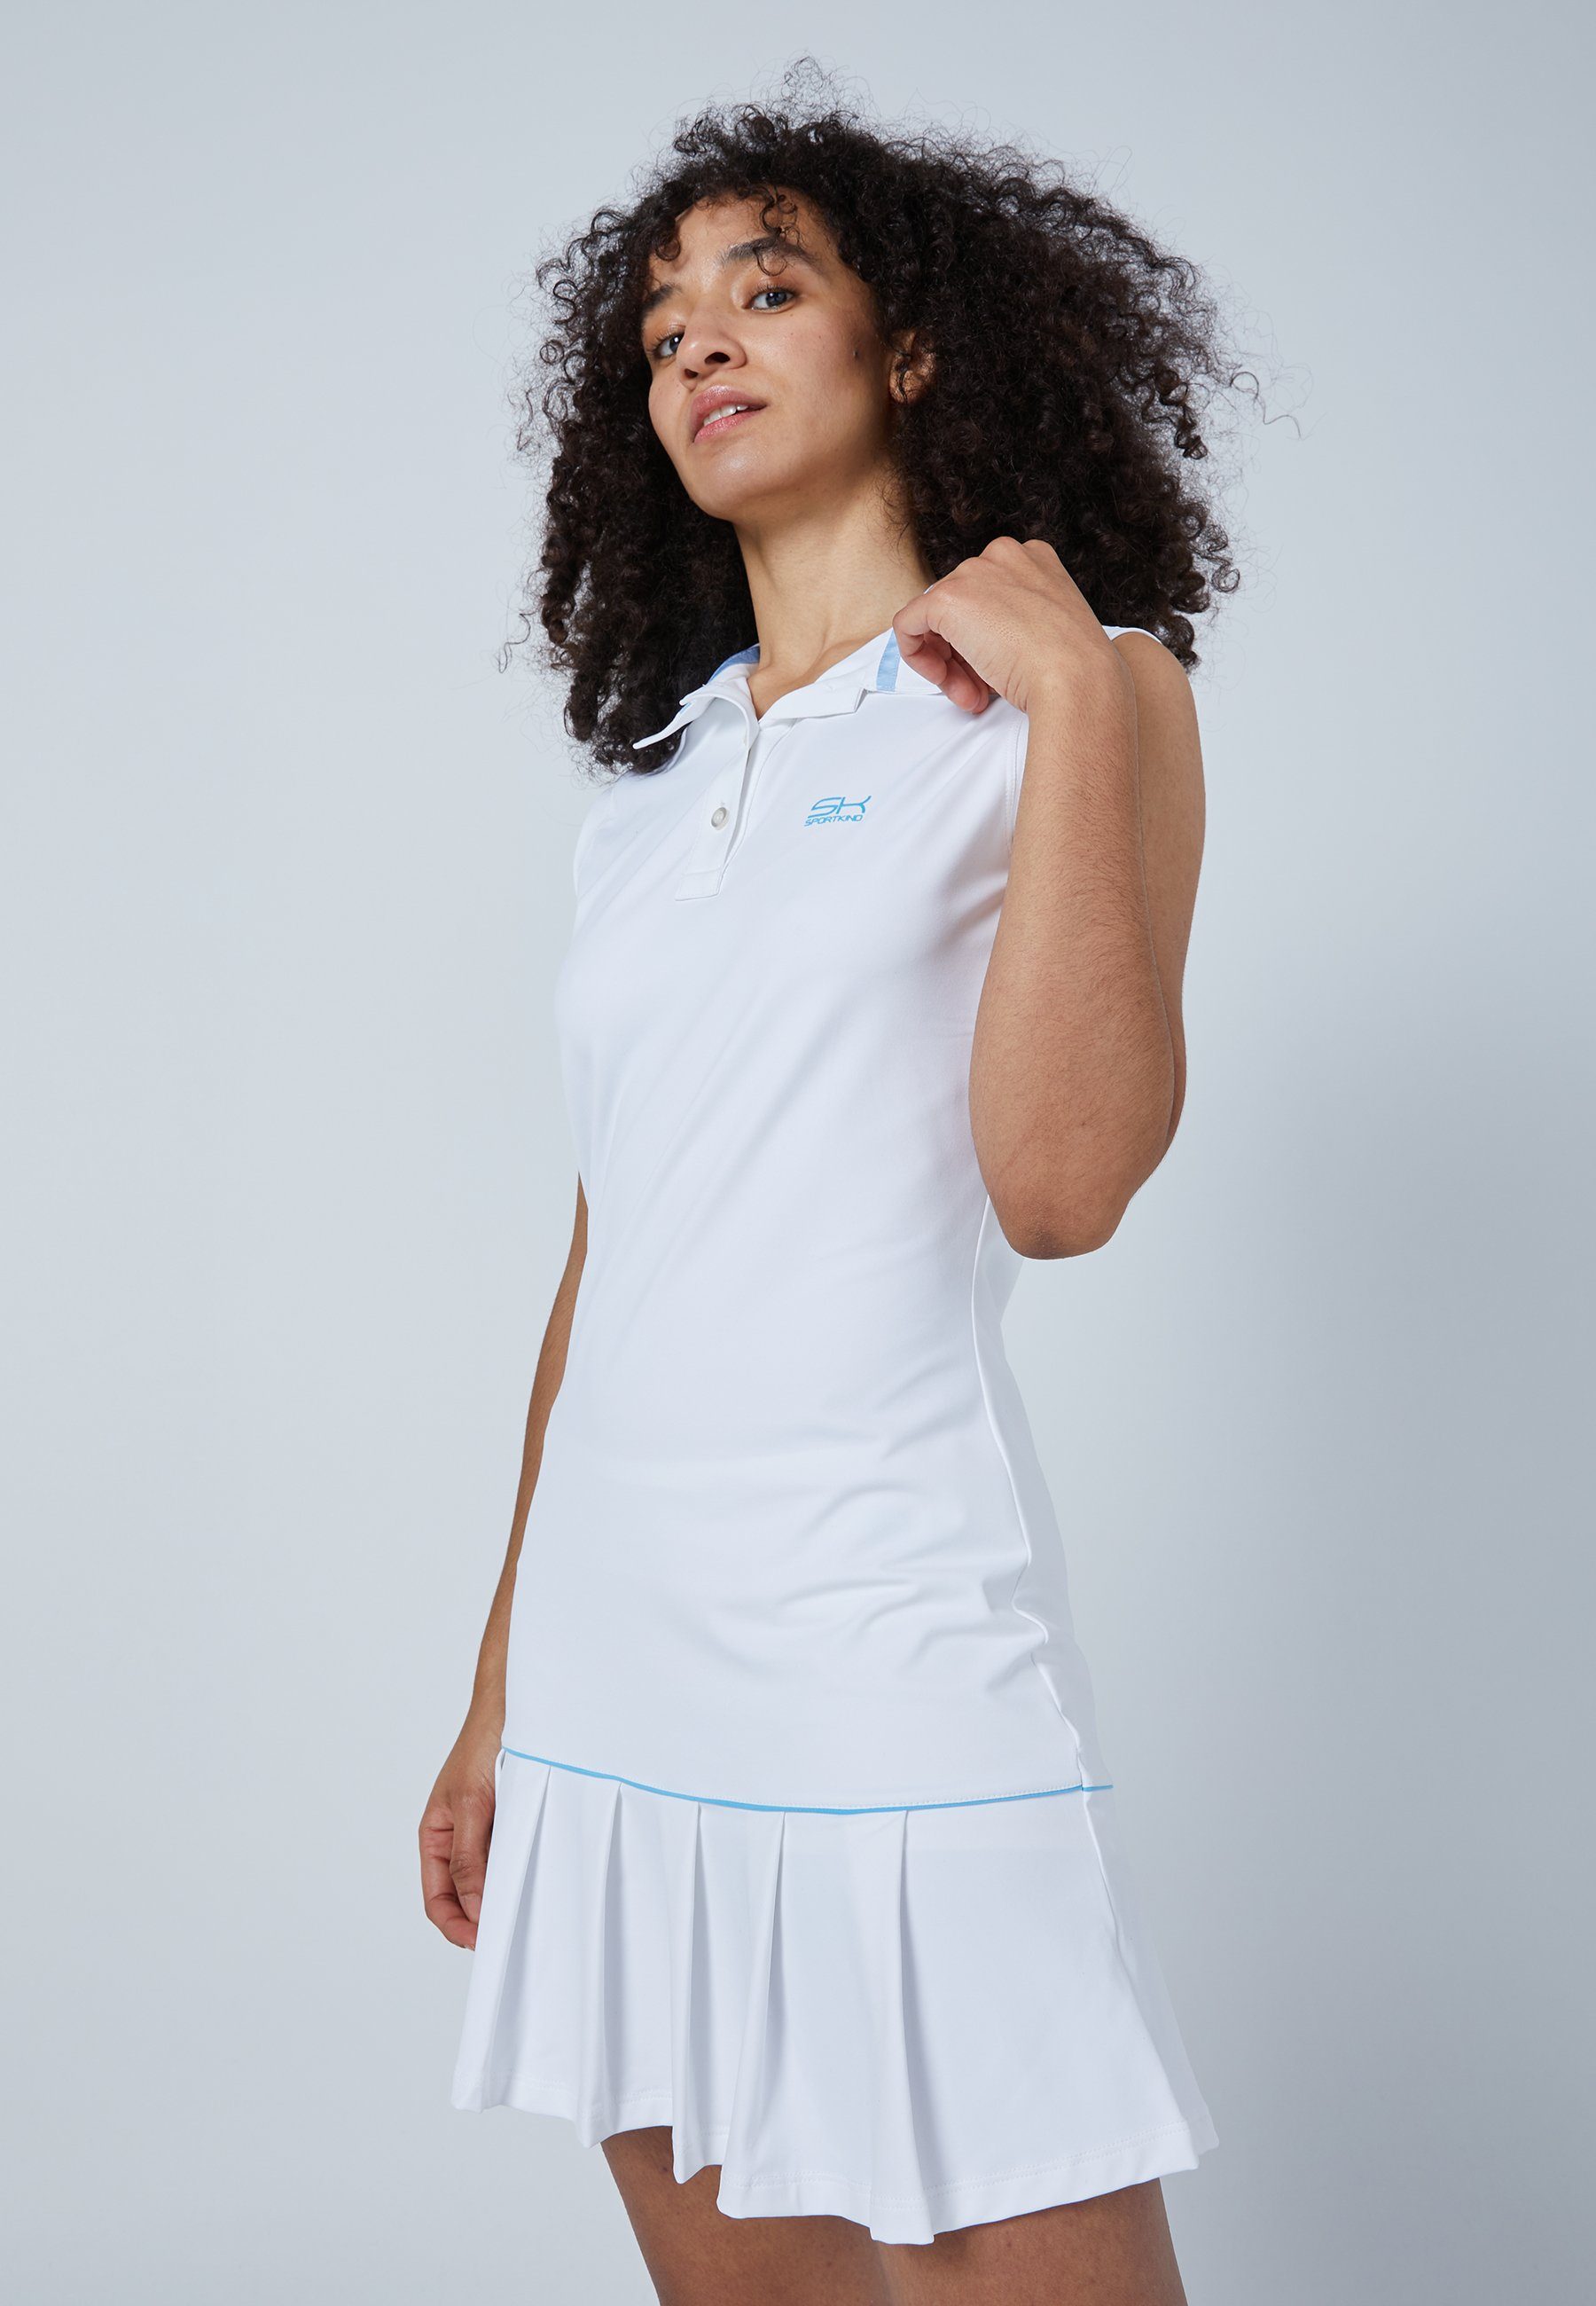 Polo SPORTKIND ohne Arm Kleid & Golf Mädchen Tenniskleid Damen weiß